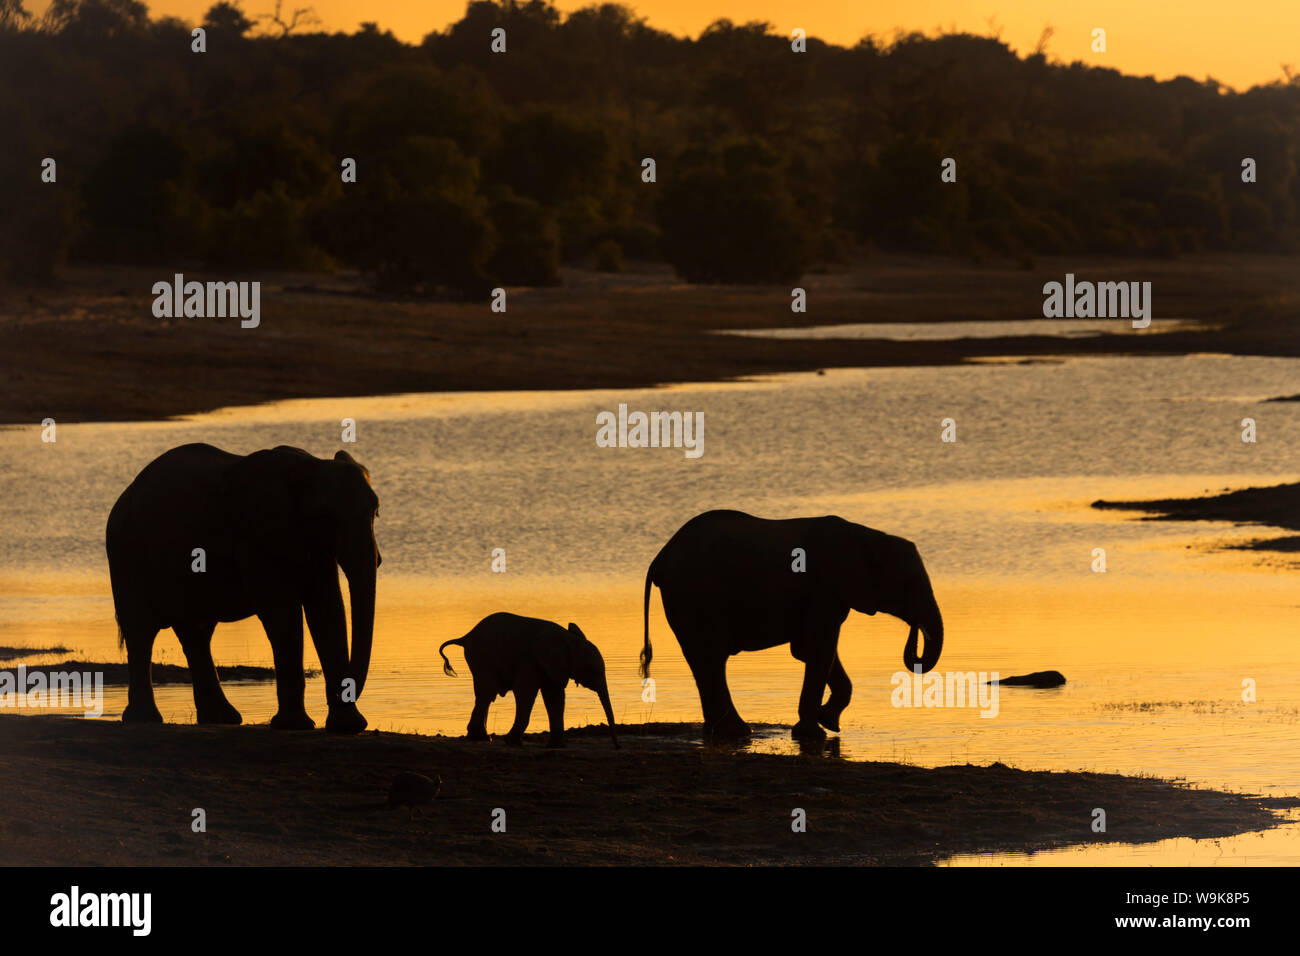 African elephant (Loxodonta africana) at sunset, Chobe River, Botswana, Africa Stock Photo